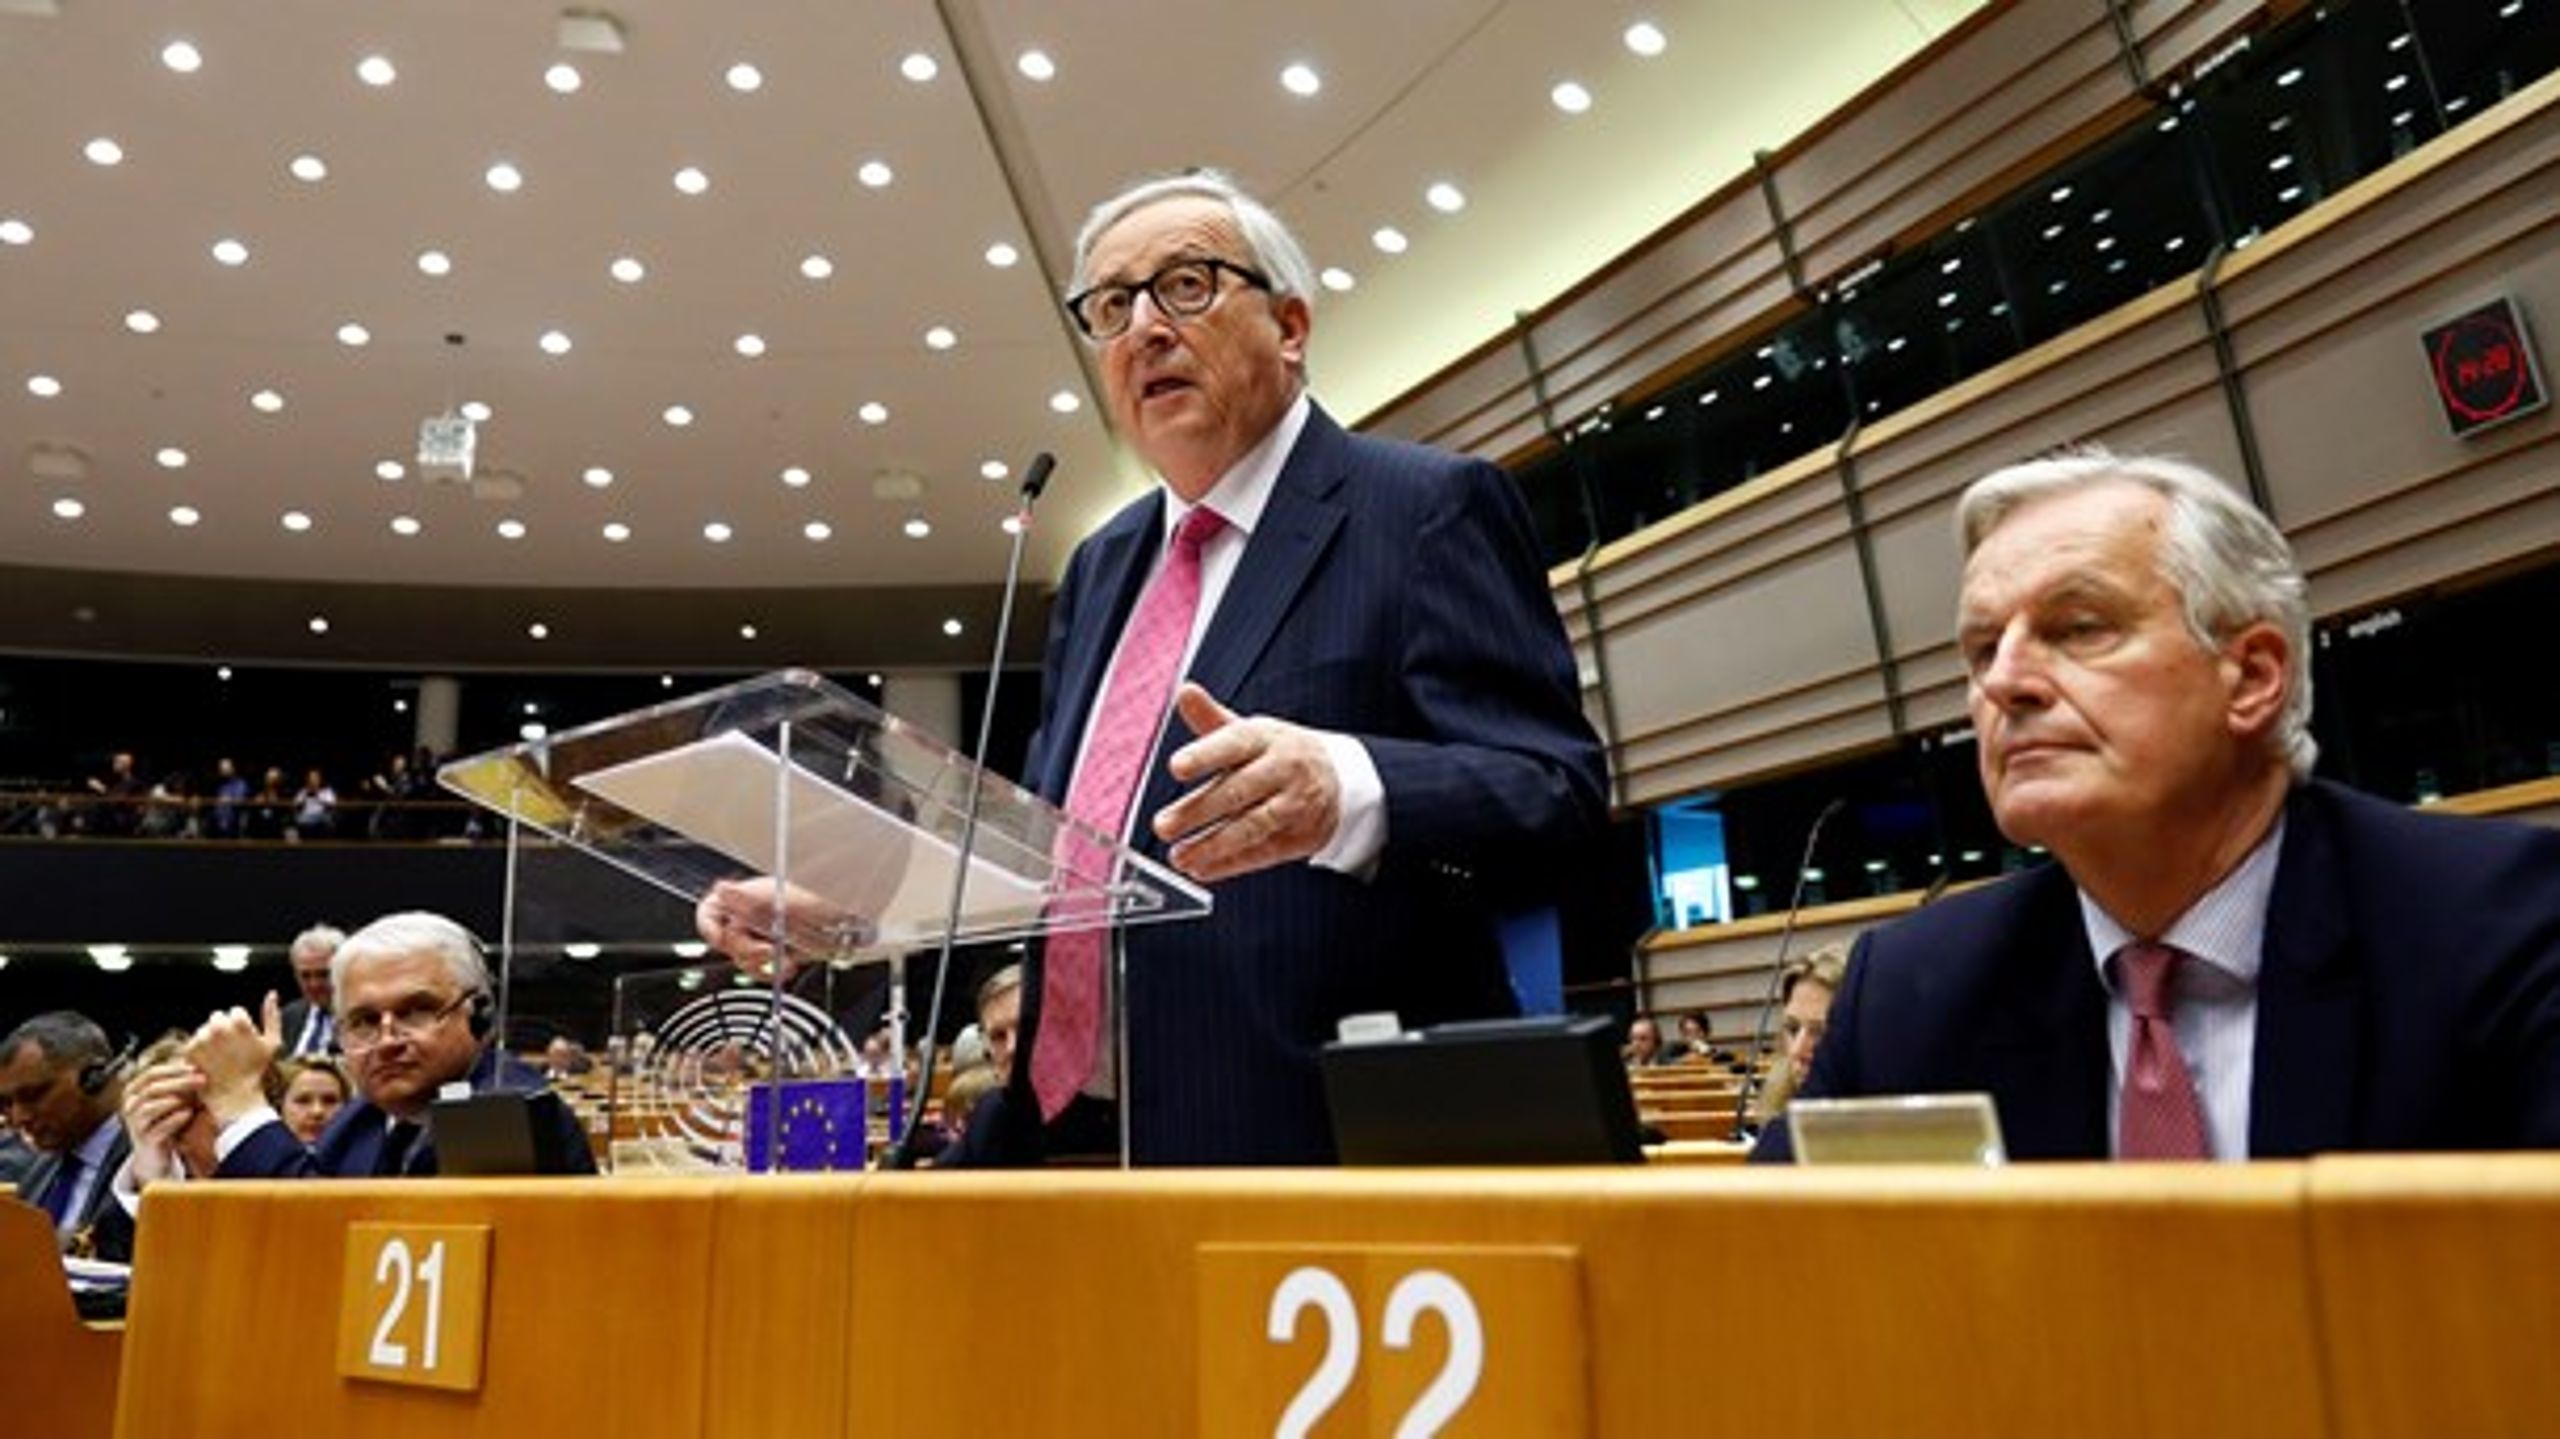 Da Jean-Claude Juncker blev EU-kommissionsformand, tog han en digital vision med sig, som blev et markant ryk for Europa, mener Digital Europe.